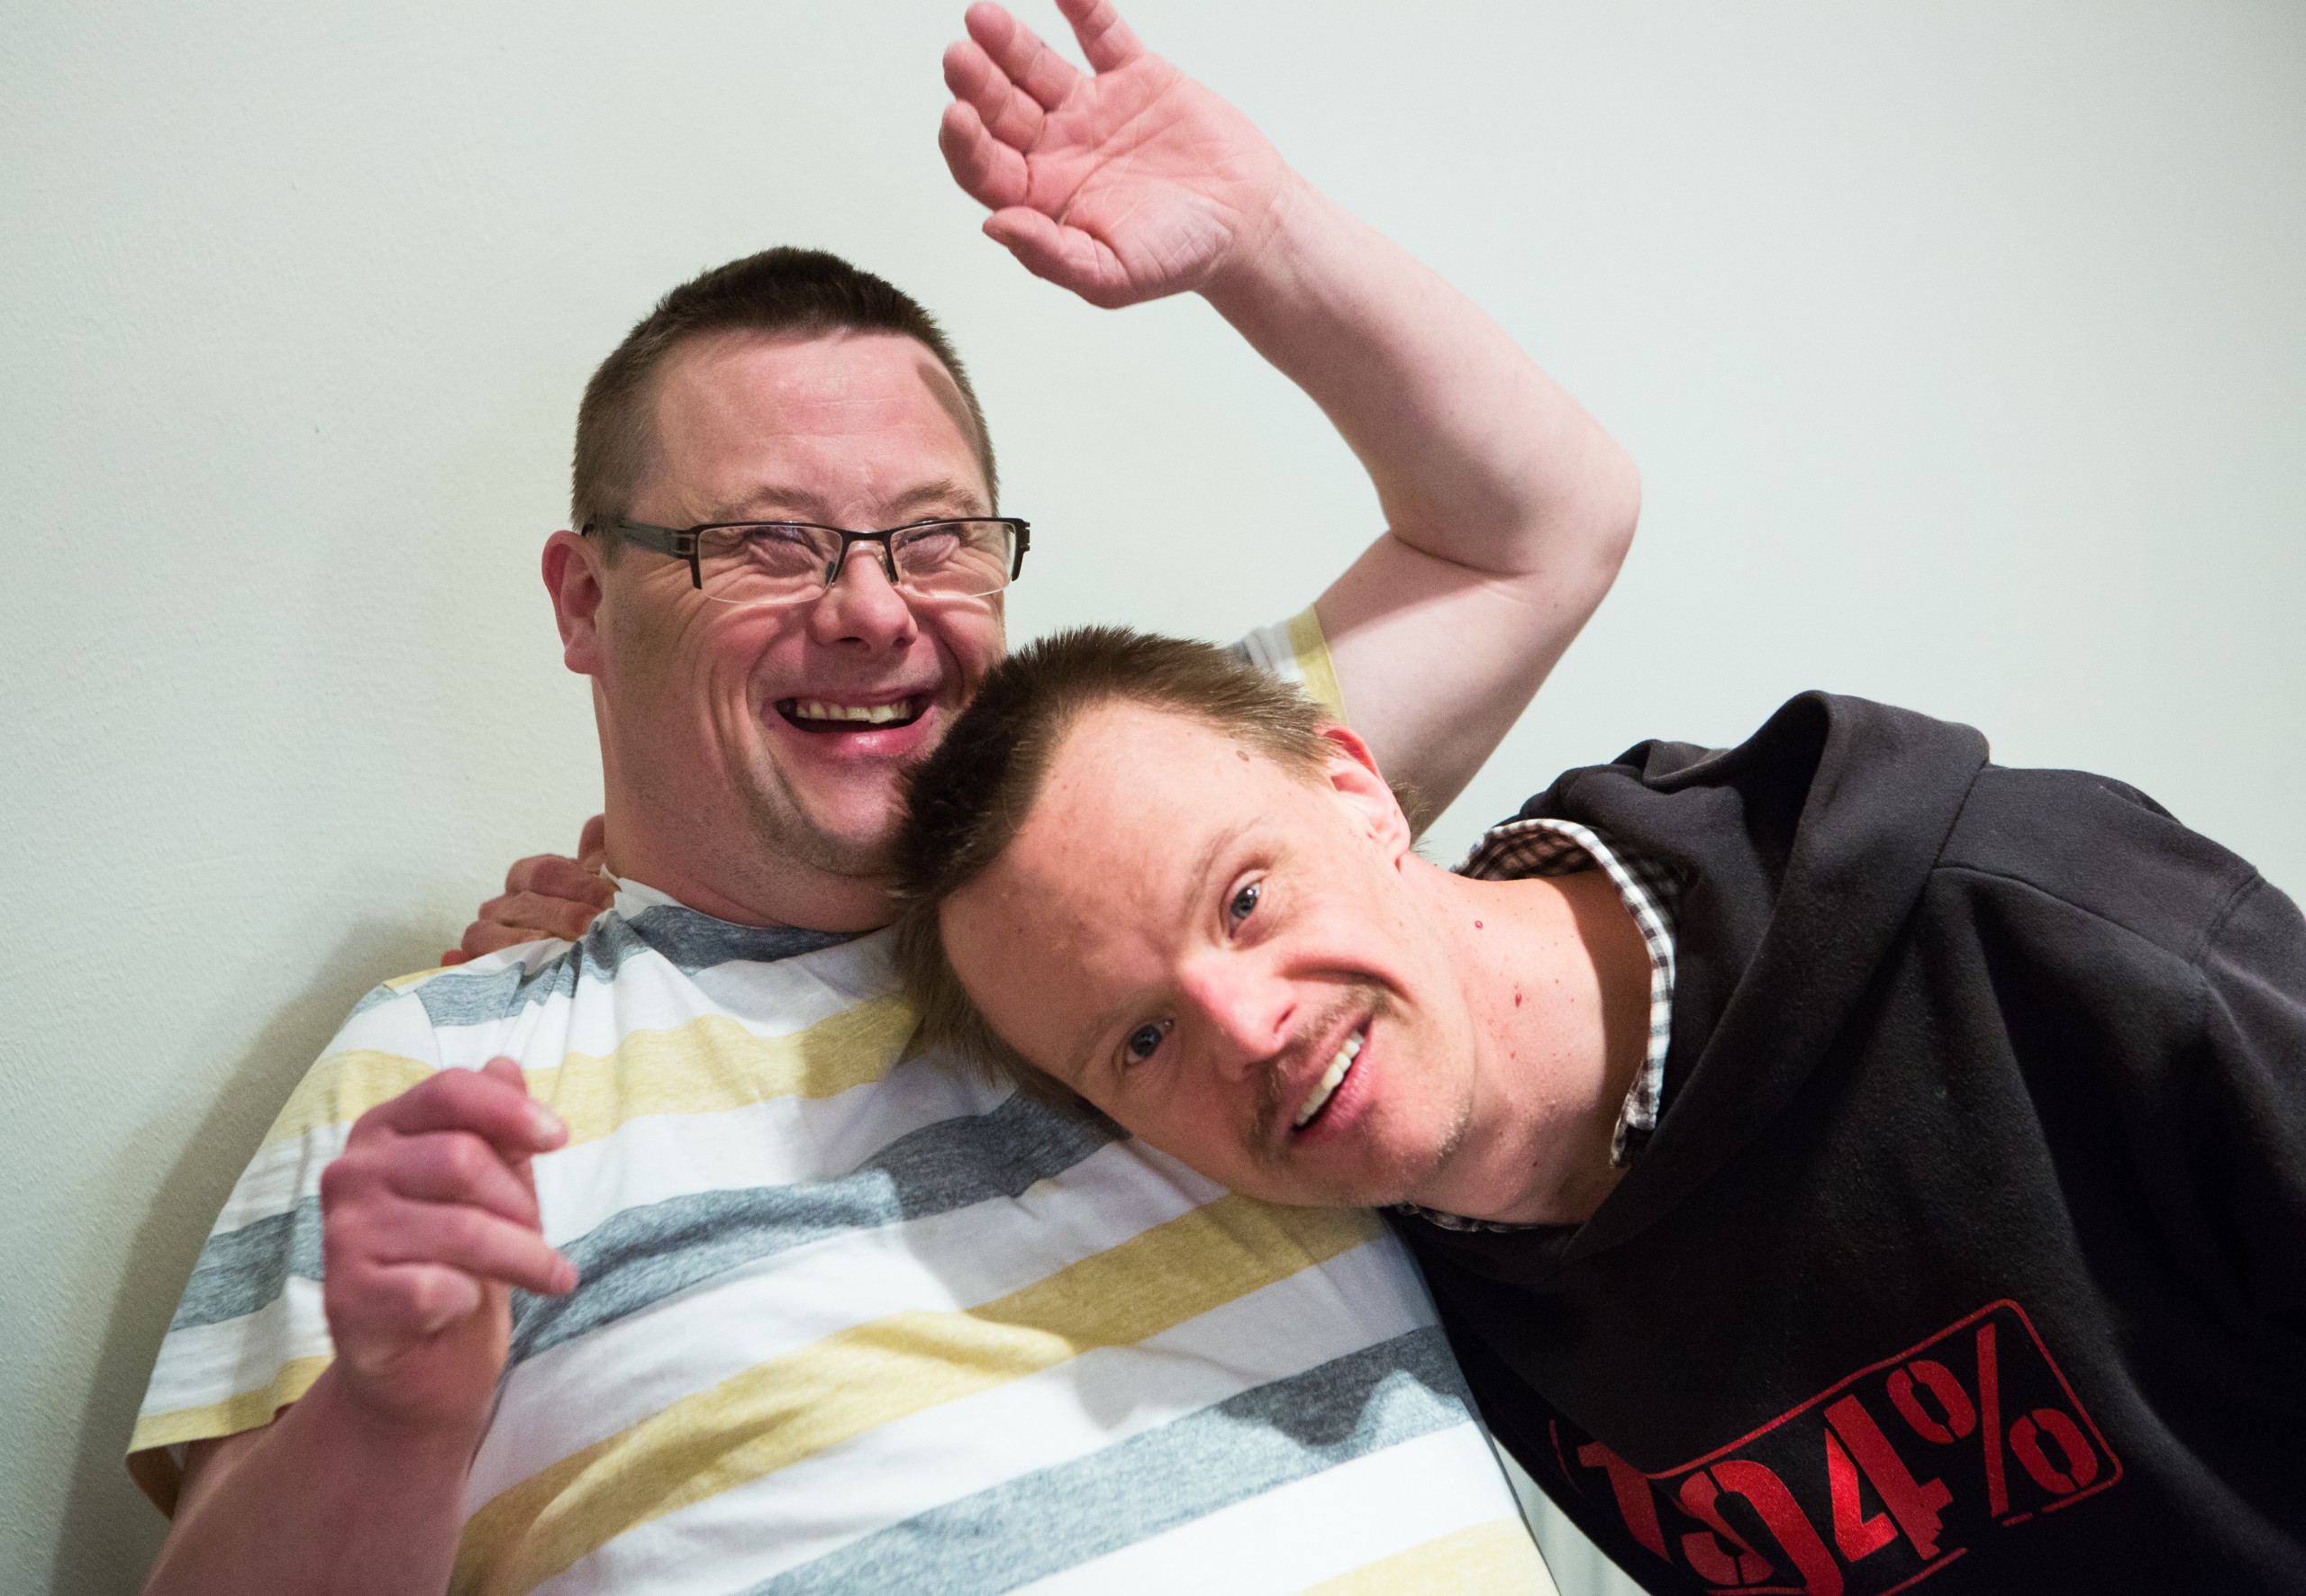 Zwei Menschen mit Behinderung lachen gemeinsam in freundschaftlicher Pose